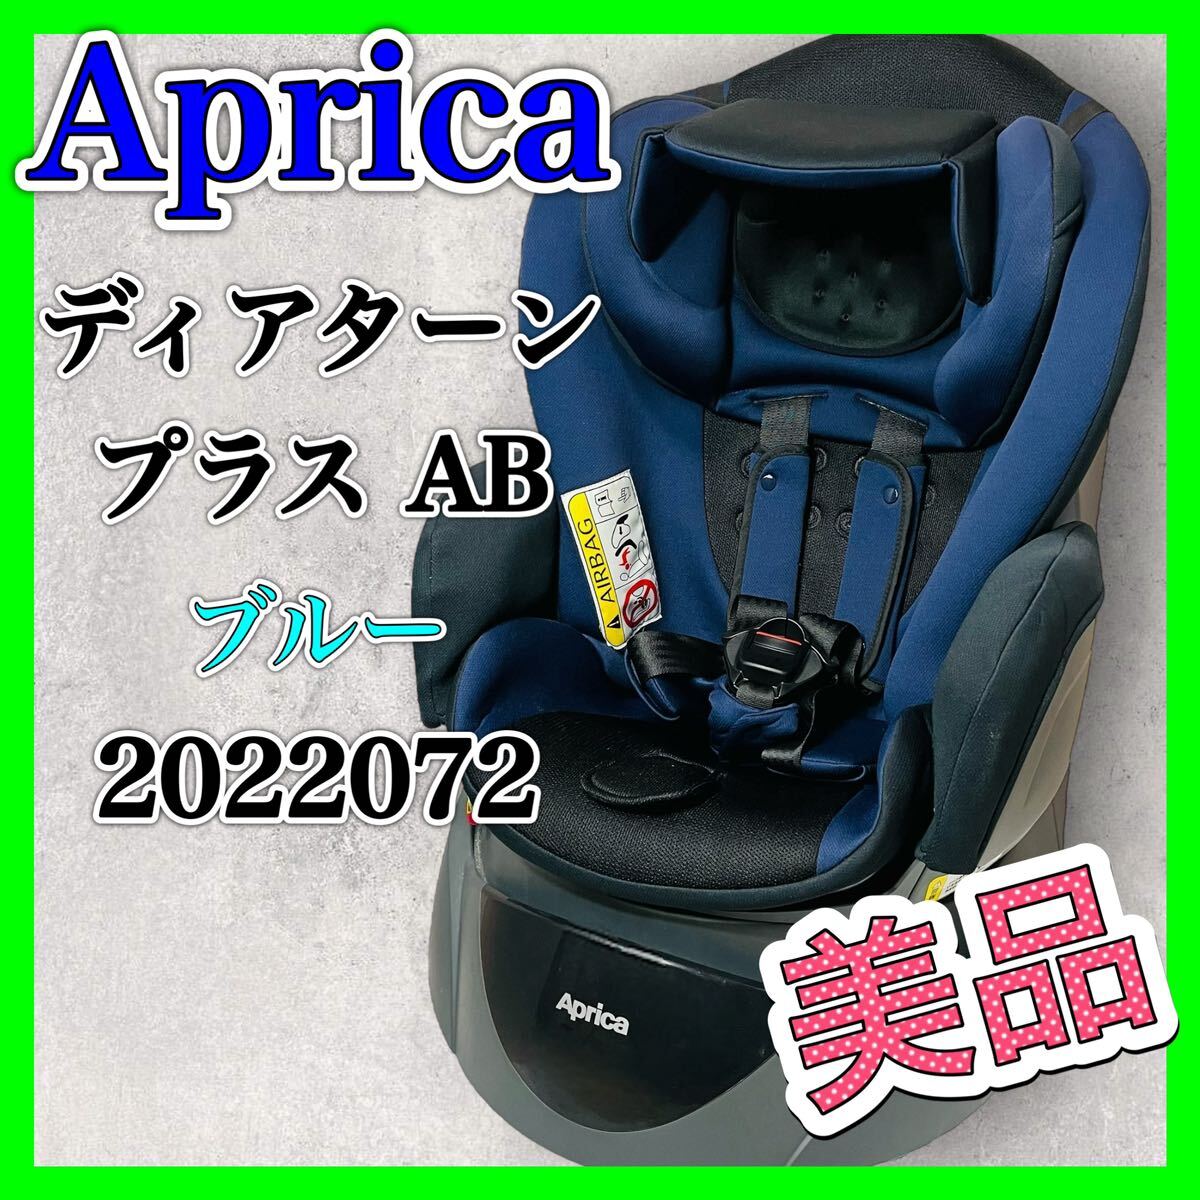 Apricatia Turn плюс AB голубой 2022072 прекрасный товар детское кресло Aprica Deaturn Plus